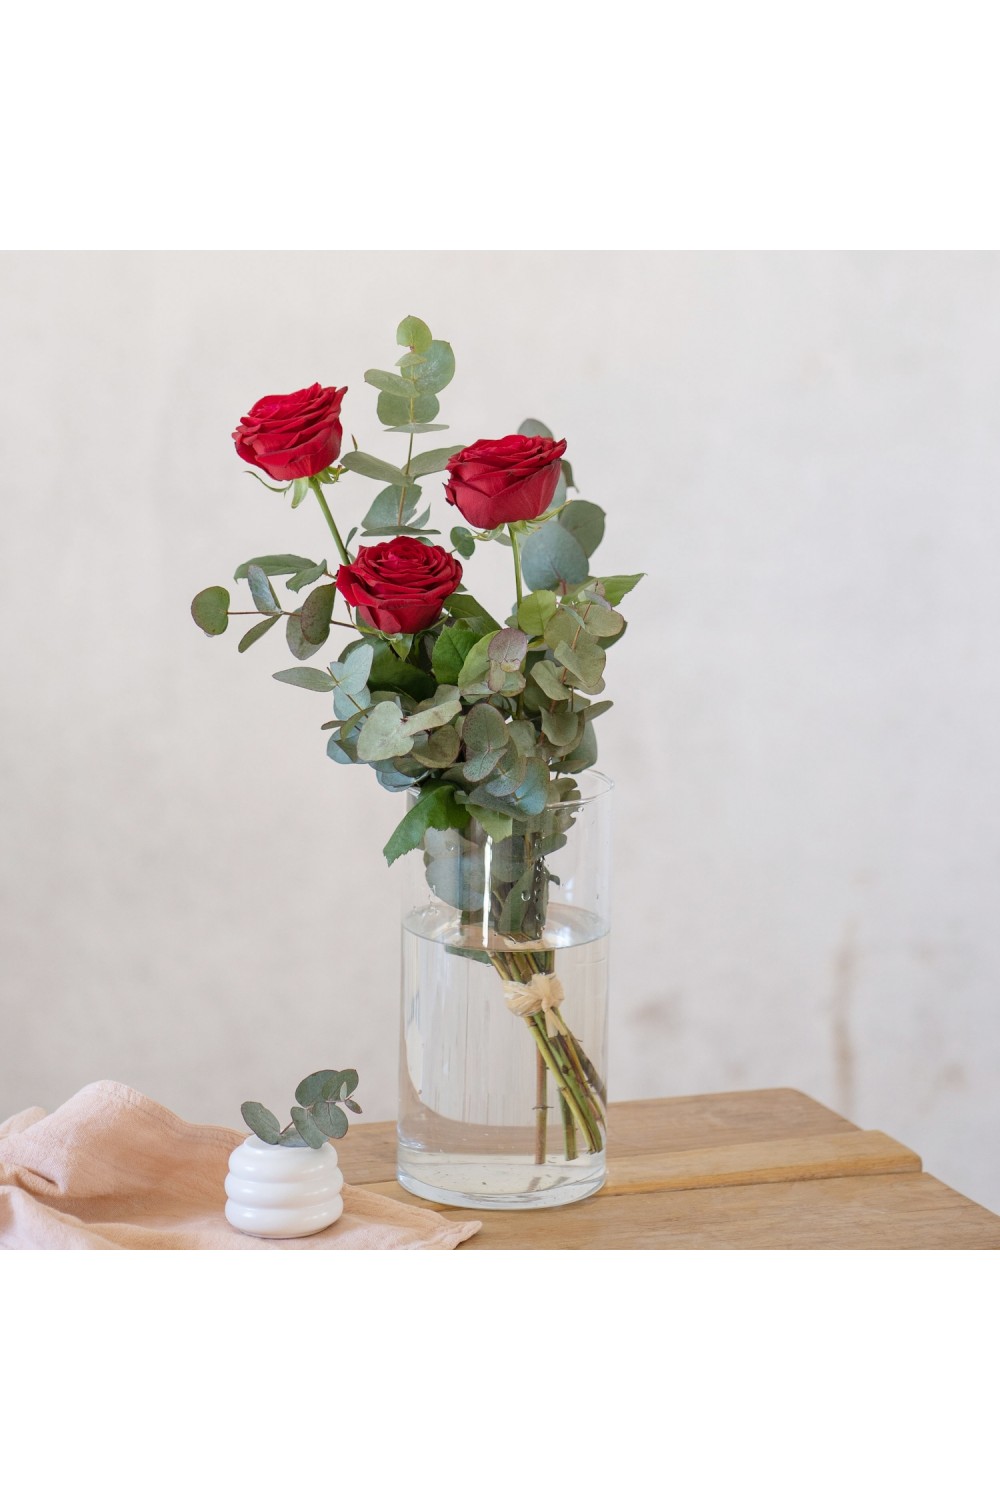 Enviar rosas - 3 Rosas Rojas de Tallo Largo - Interflora